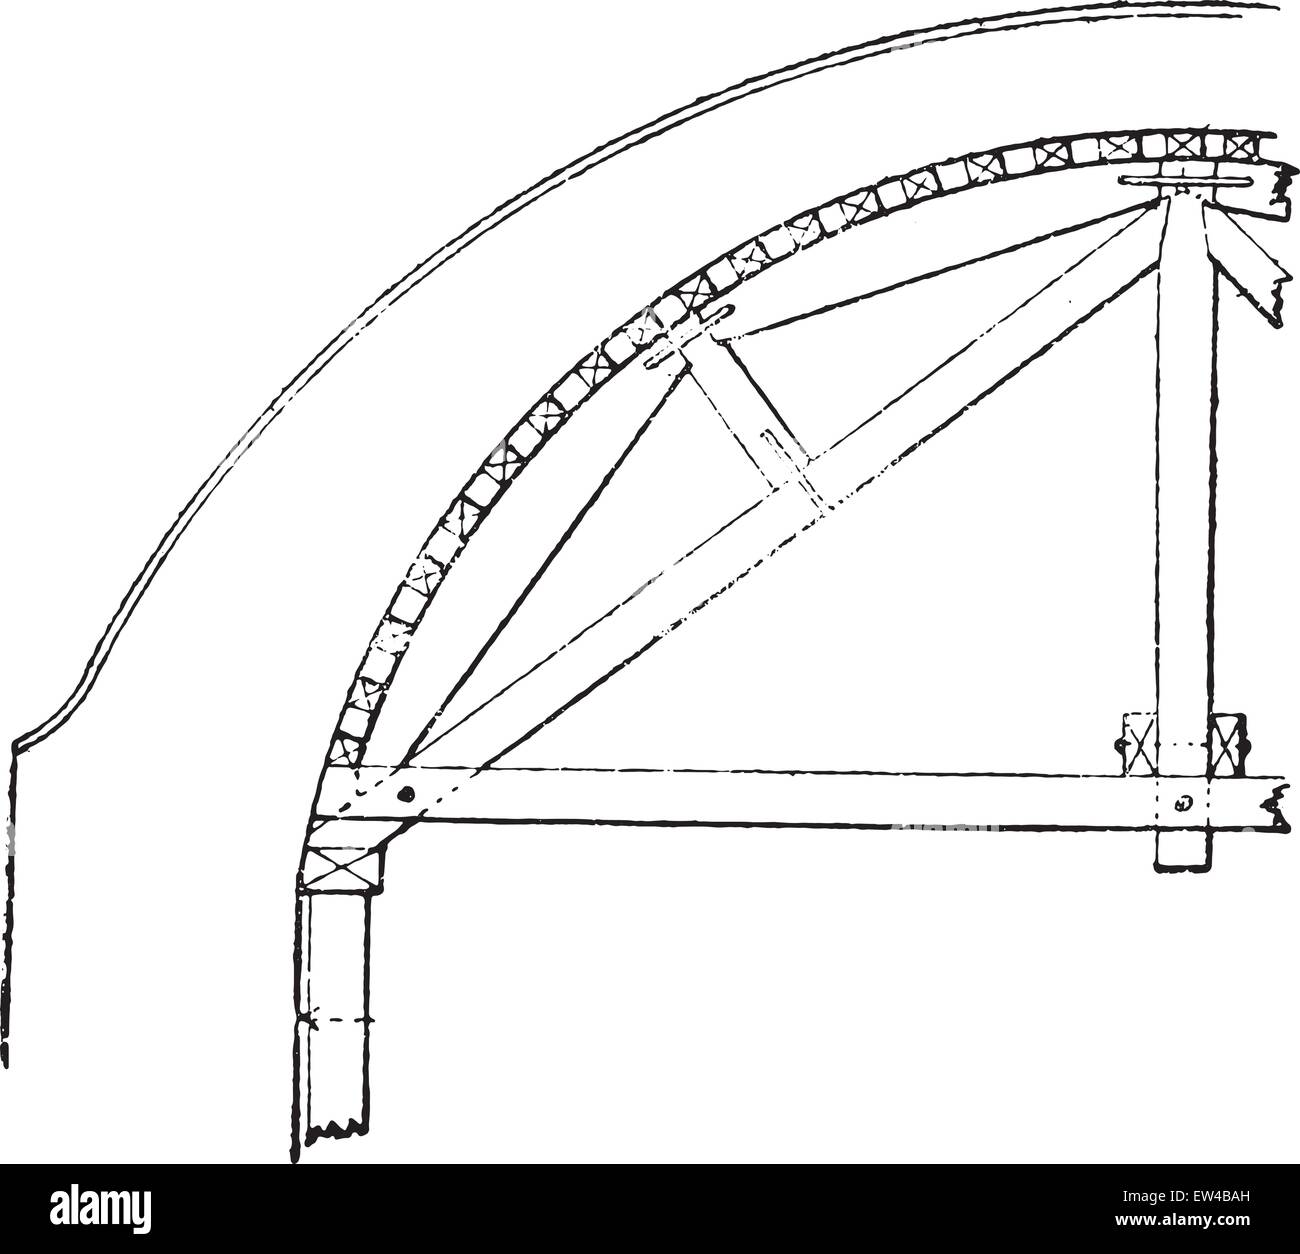 Hanger semicircular arch, vintage engraved illustration. Industrial encyclopedia E.-O. Lami - 1875. Stock Vector